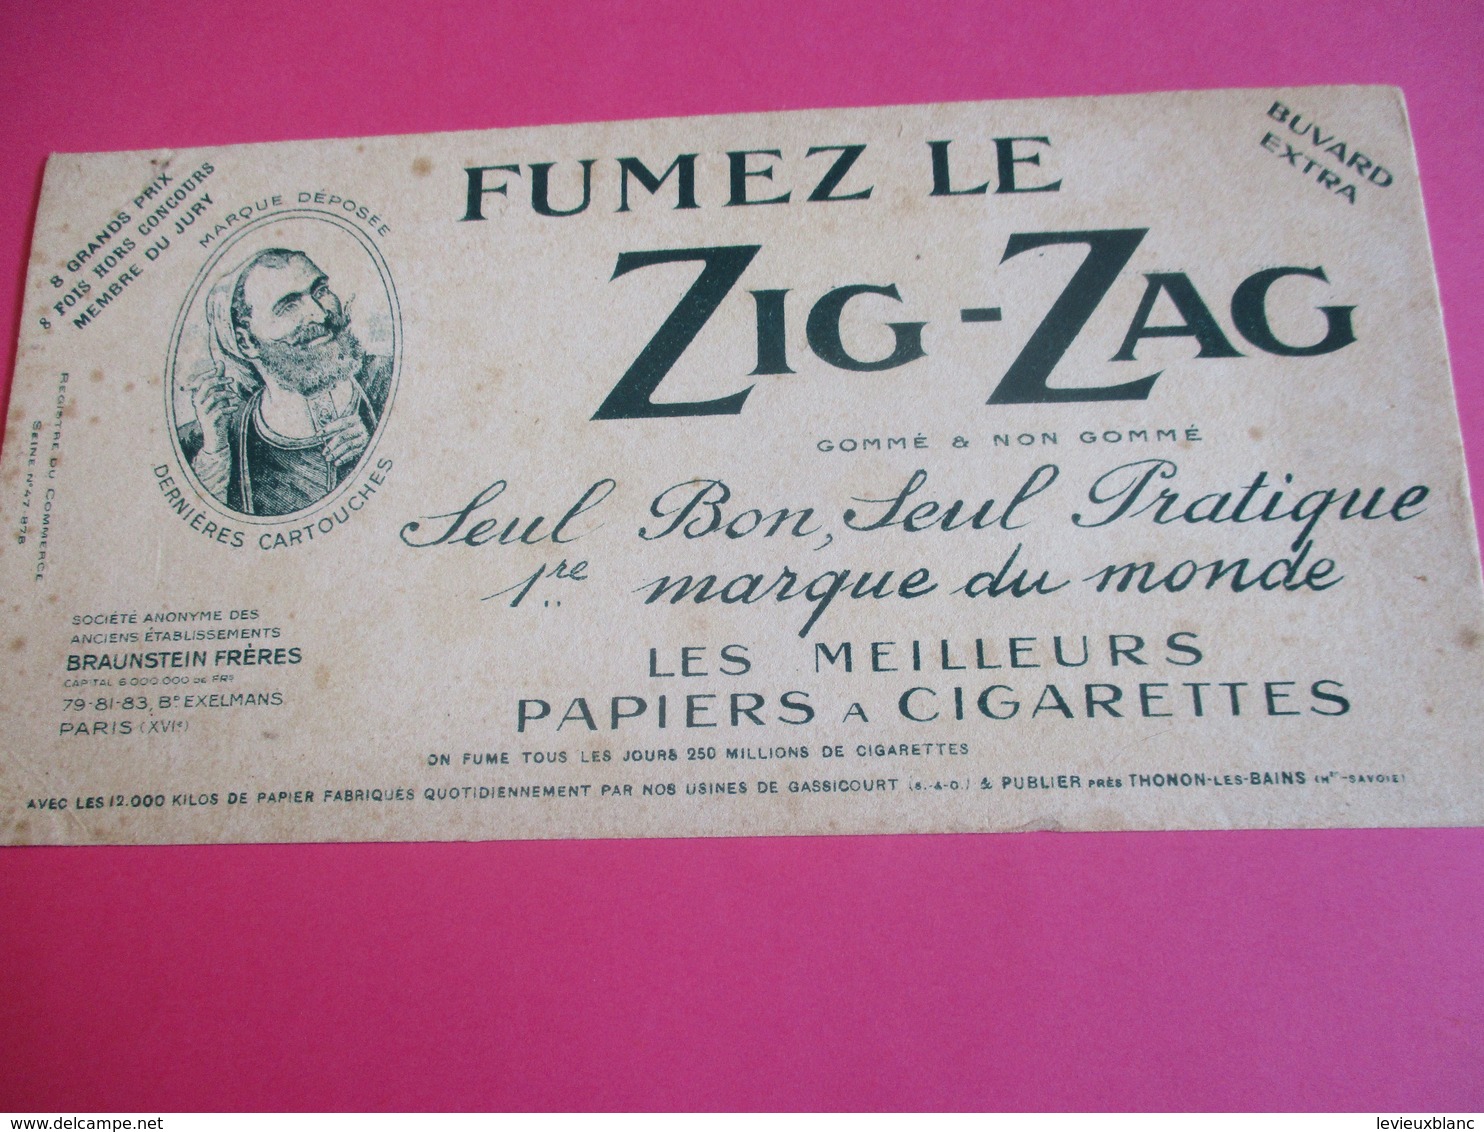 Buvard Extra/ Papier à Cigarette/ ZIG-ZAG/Fumez Le Zig-zag/1ére Marque Du Monde/Braunstein Fréres /1930-1950   BUV290 - Tabacco & Sigarette